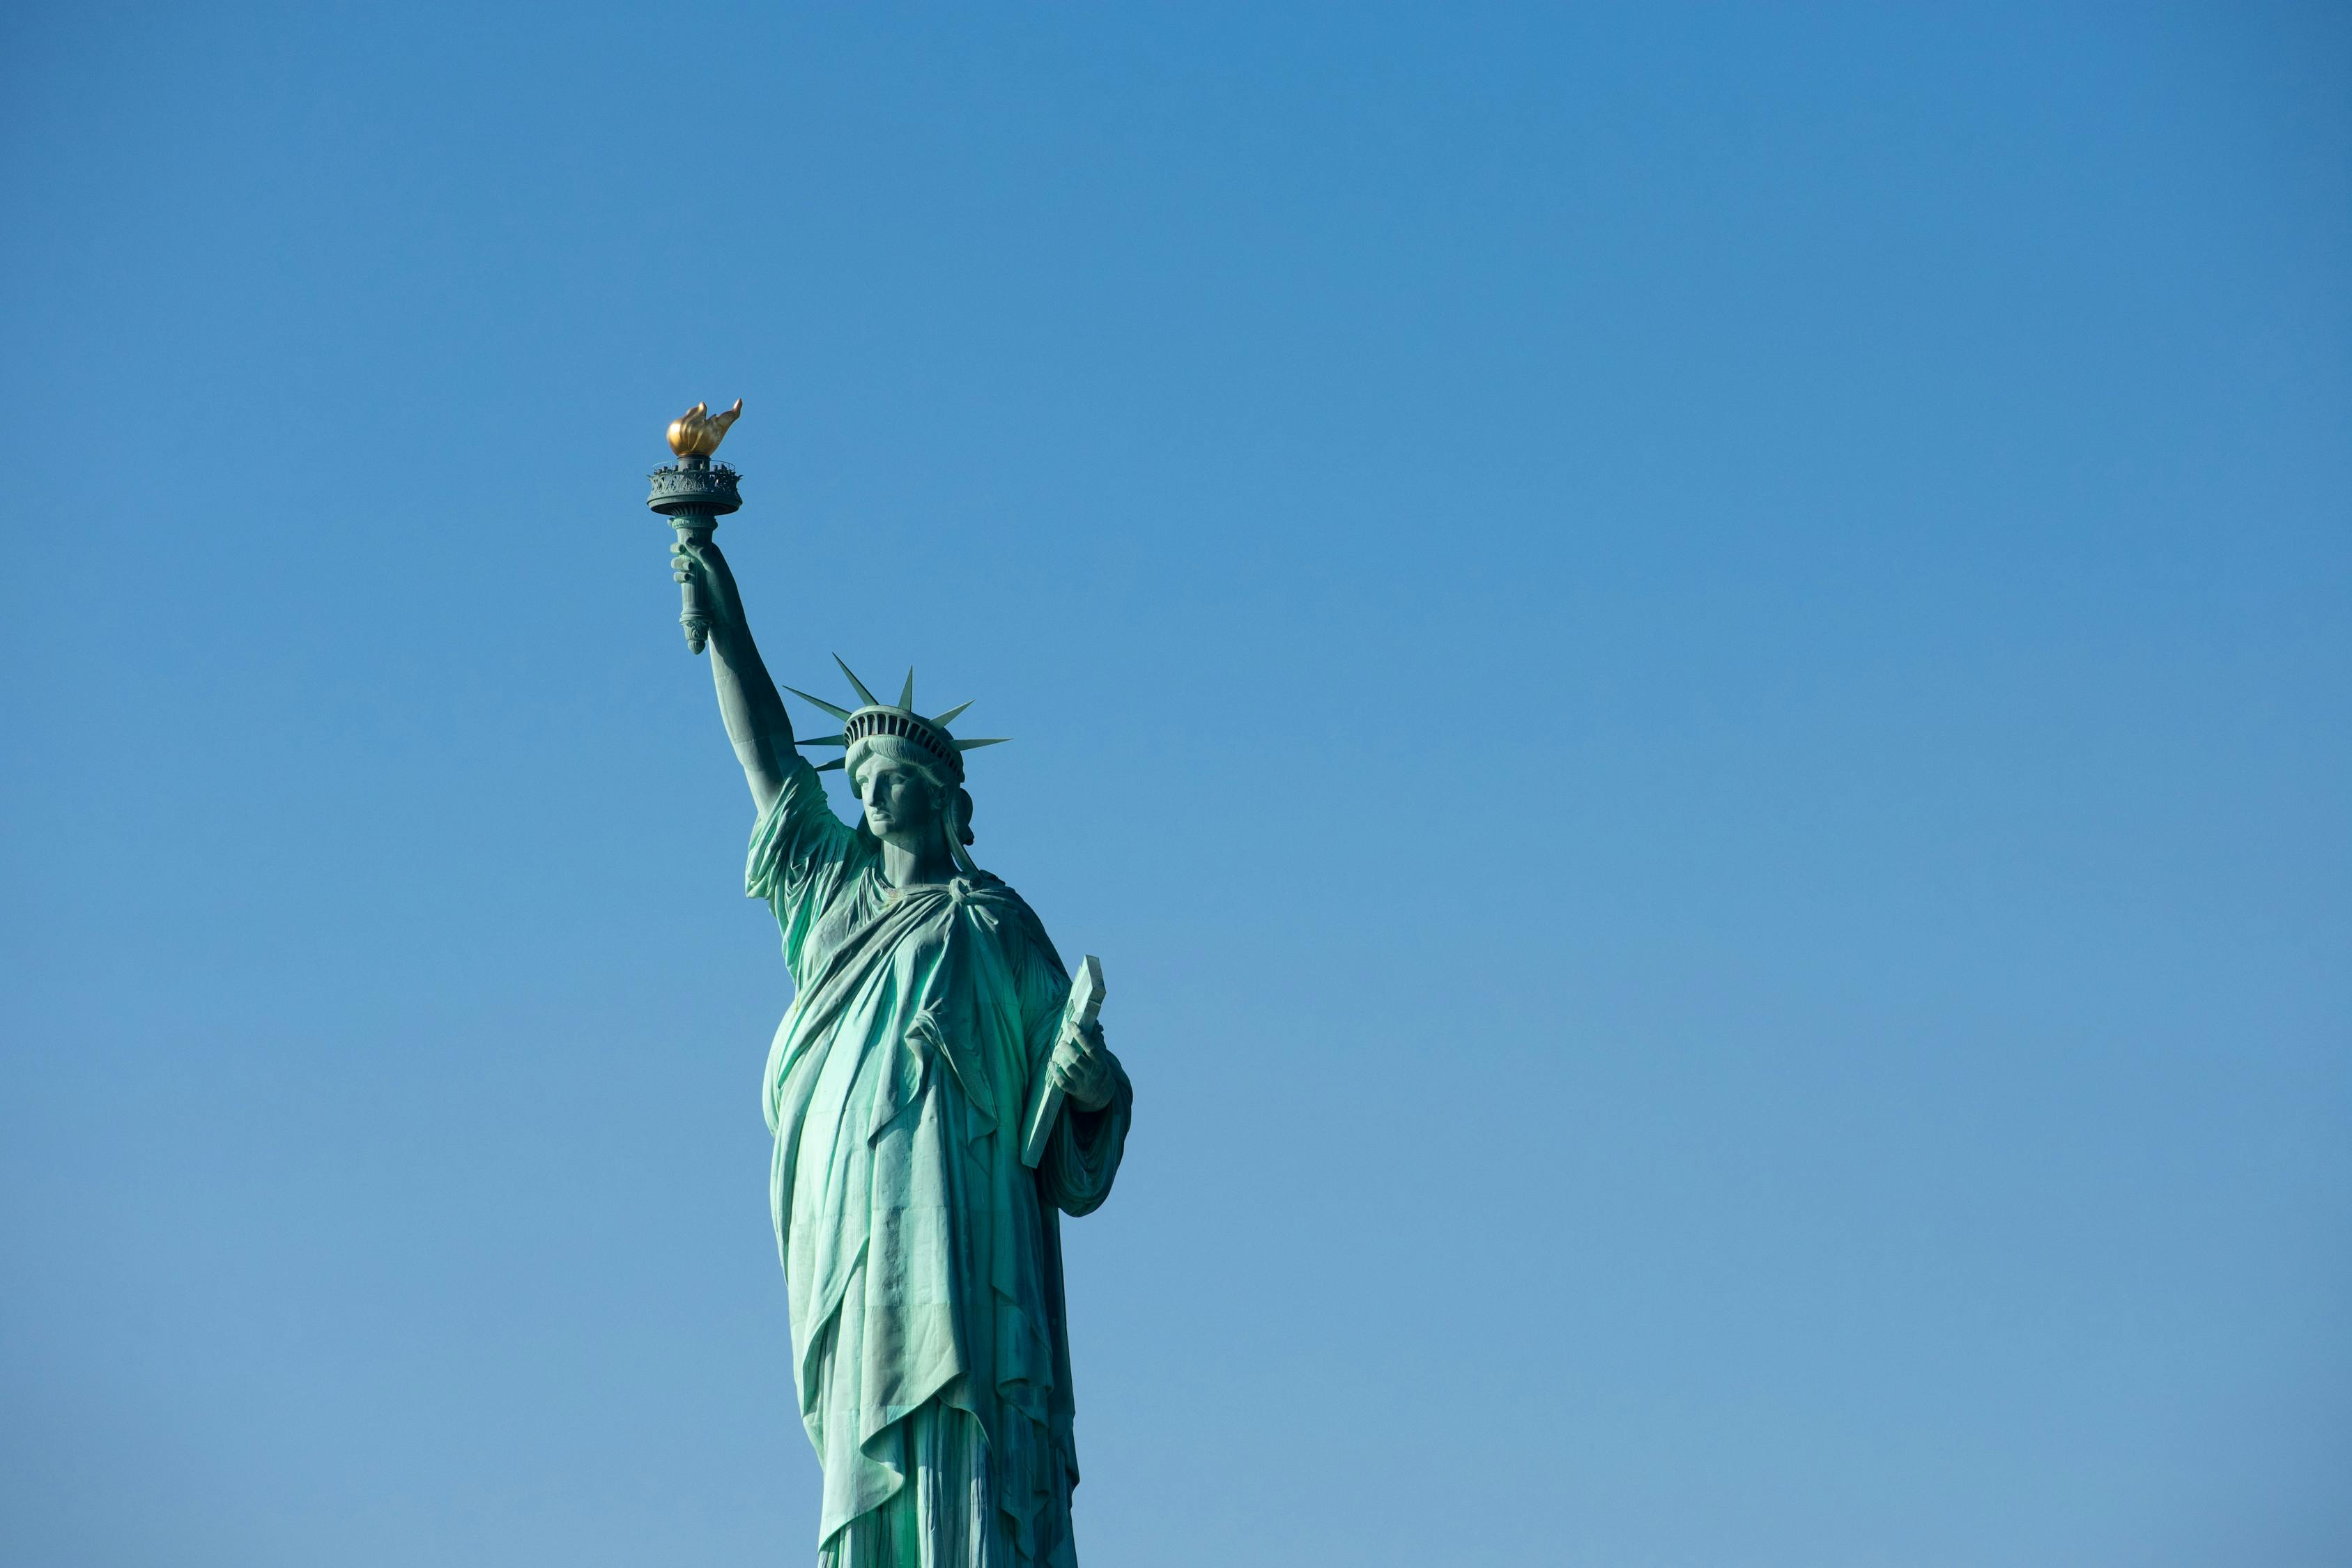 壁纸 : 纽约, 自由女神像, 自由启发世界 2560x1600 - wallpaperUp - 721143 - 电脑桌面壁纸 ...